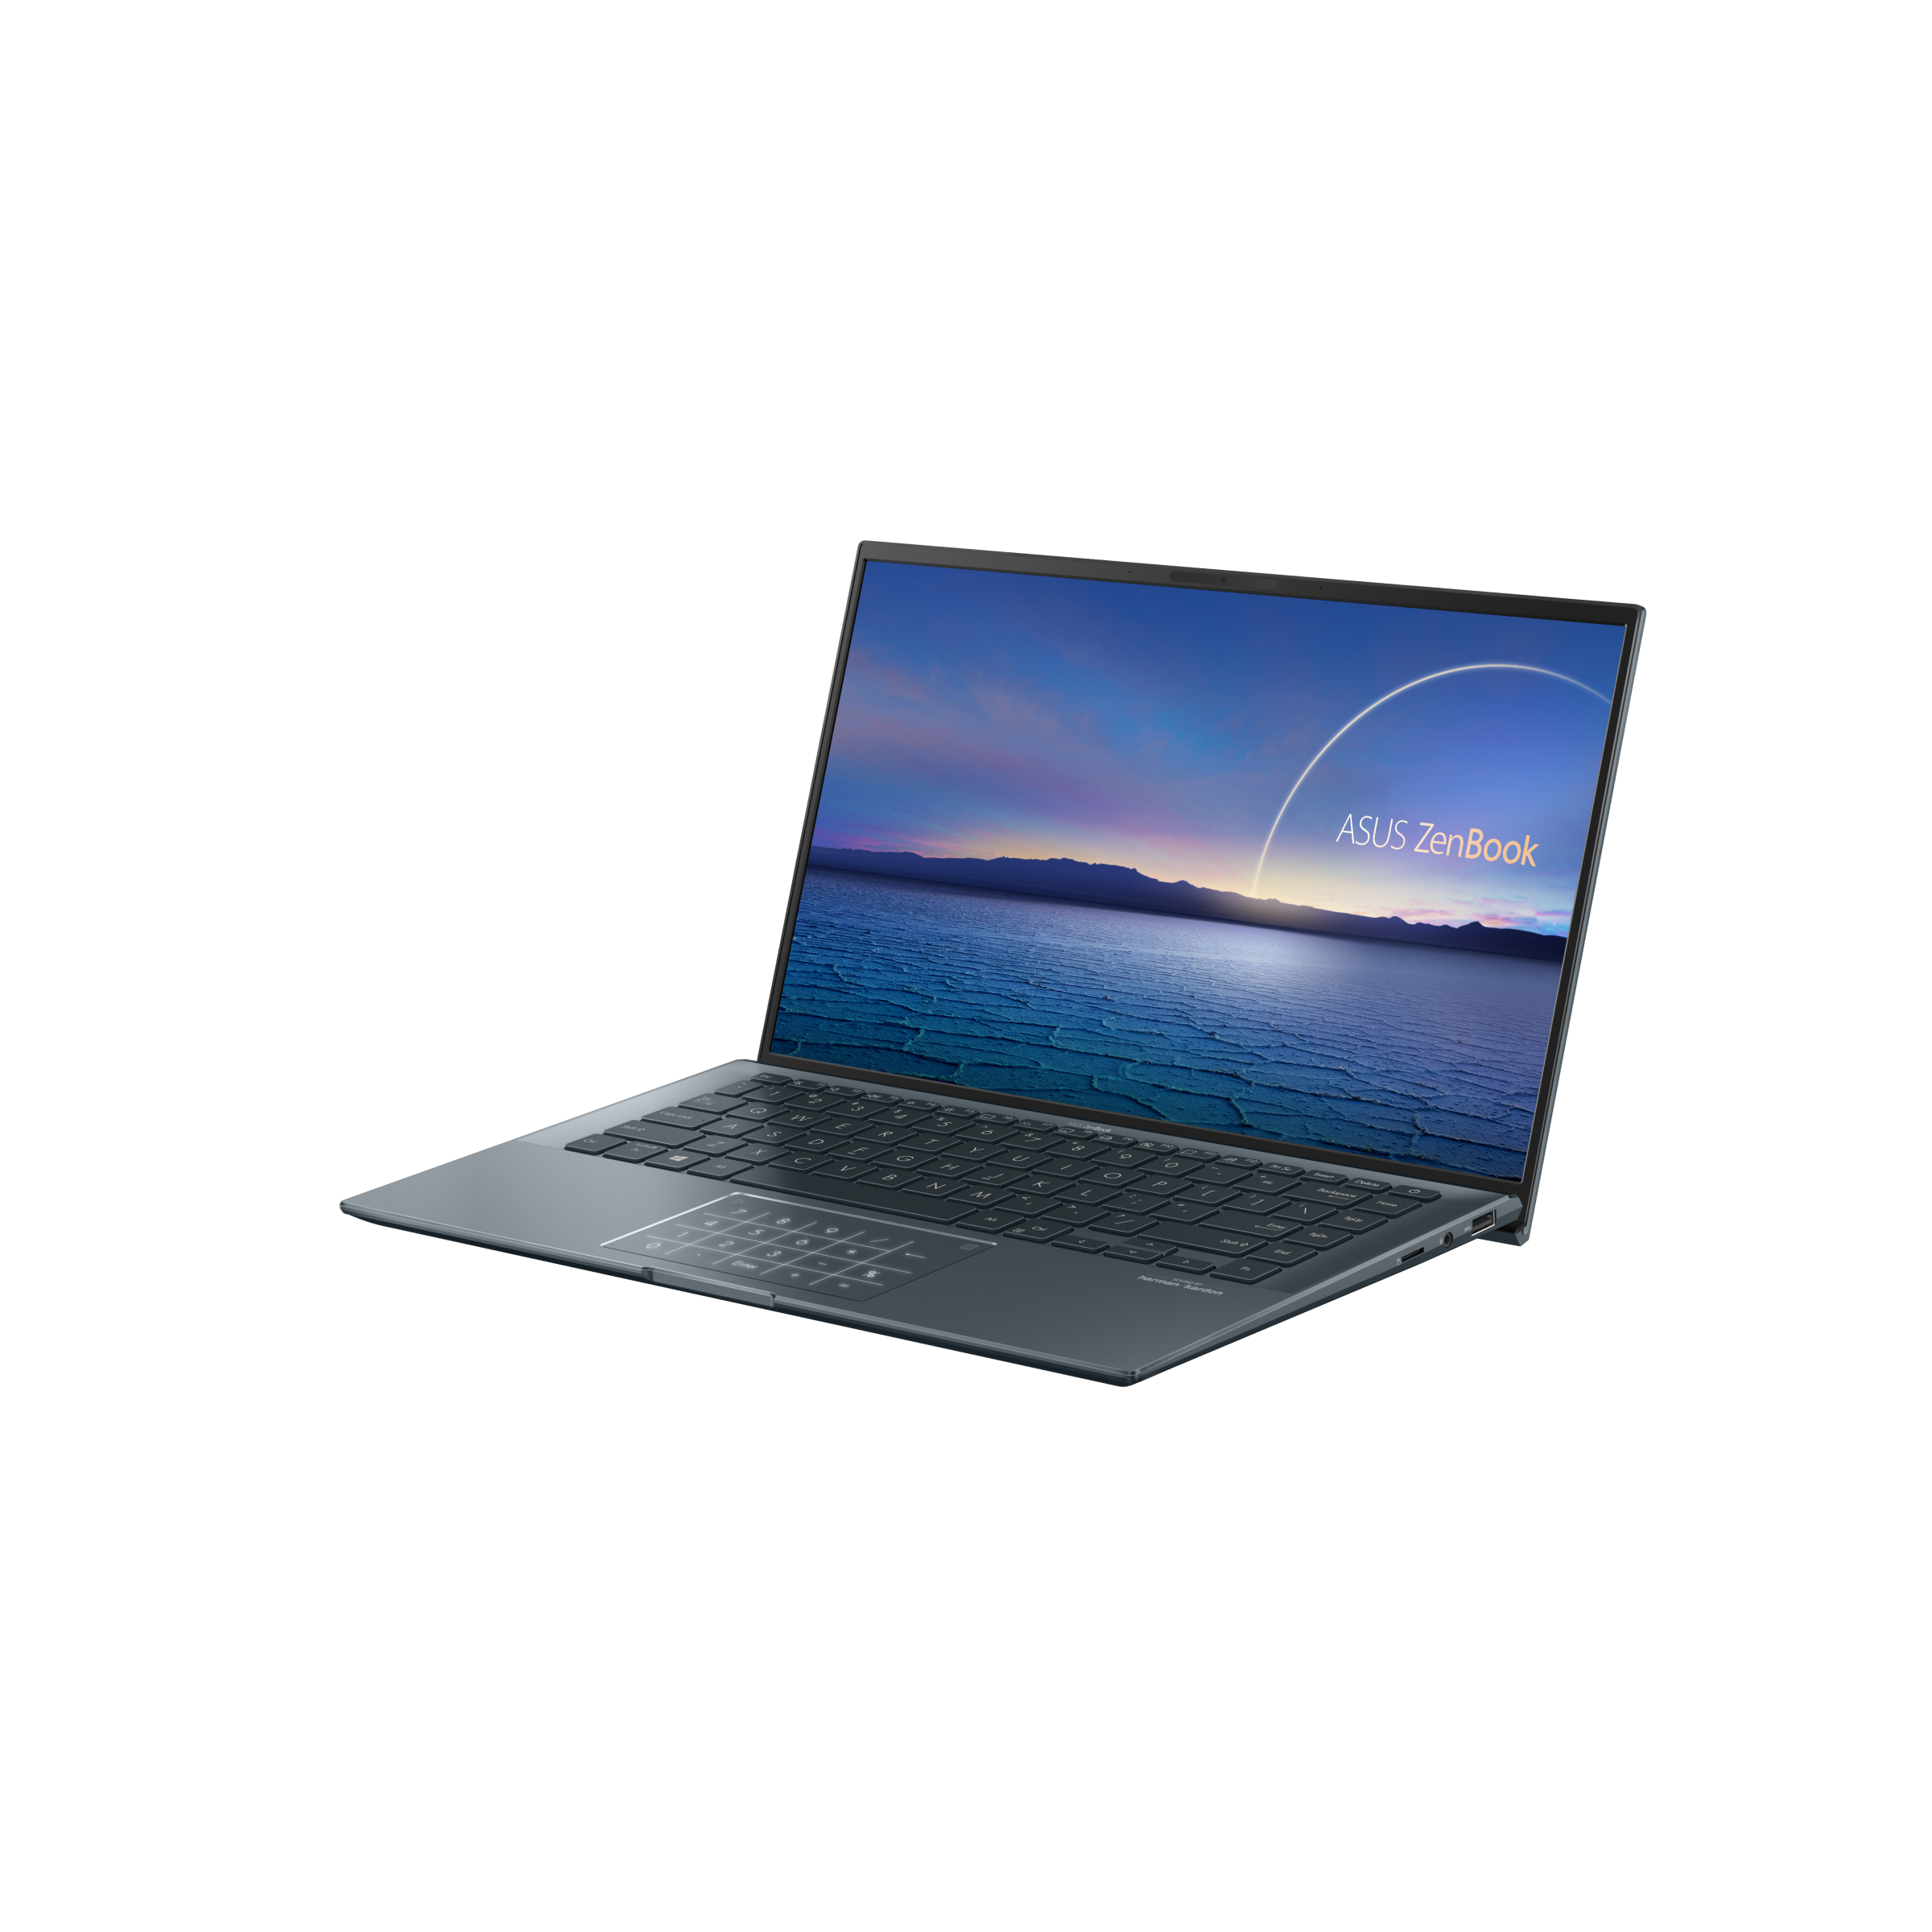 エイスース ゼンブック ウルトラブック ASUS Zenbook 13.3-Inch Touchscreen Laptop (Core i7  4500U 1.8 GHz/ 8GB RAM/ 128GB SSD/ Integrated Intel HD Grap 